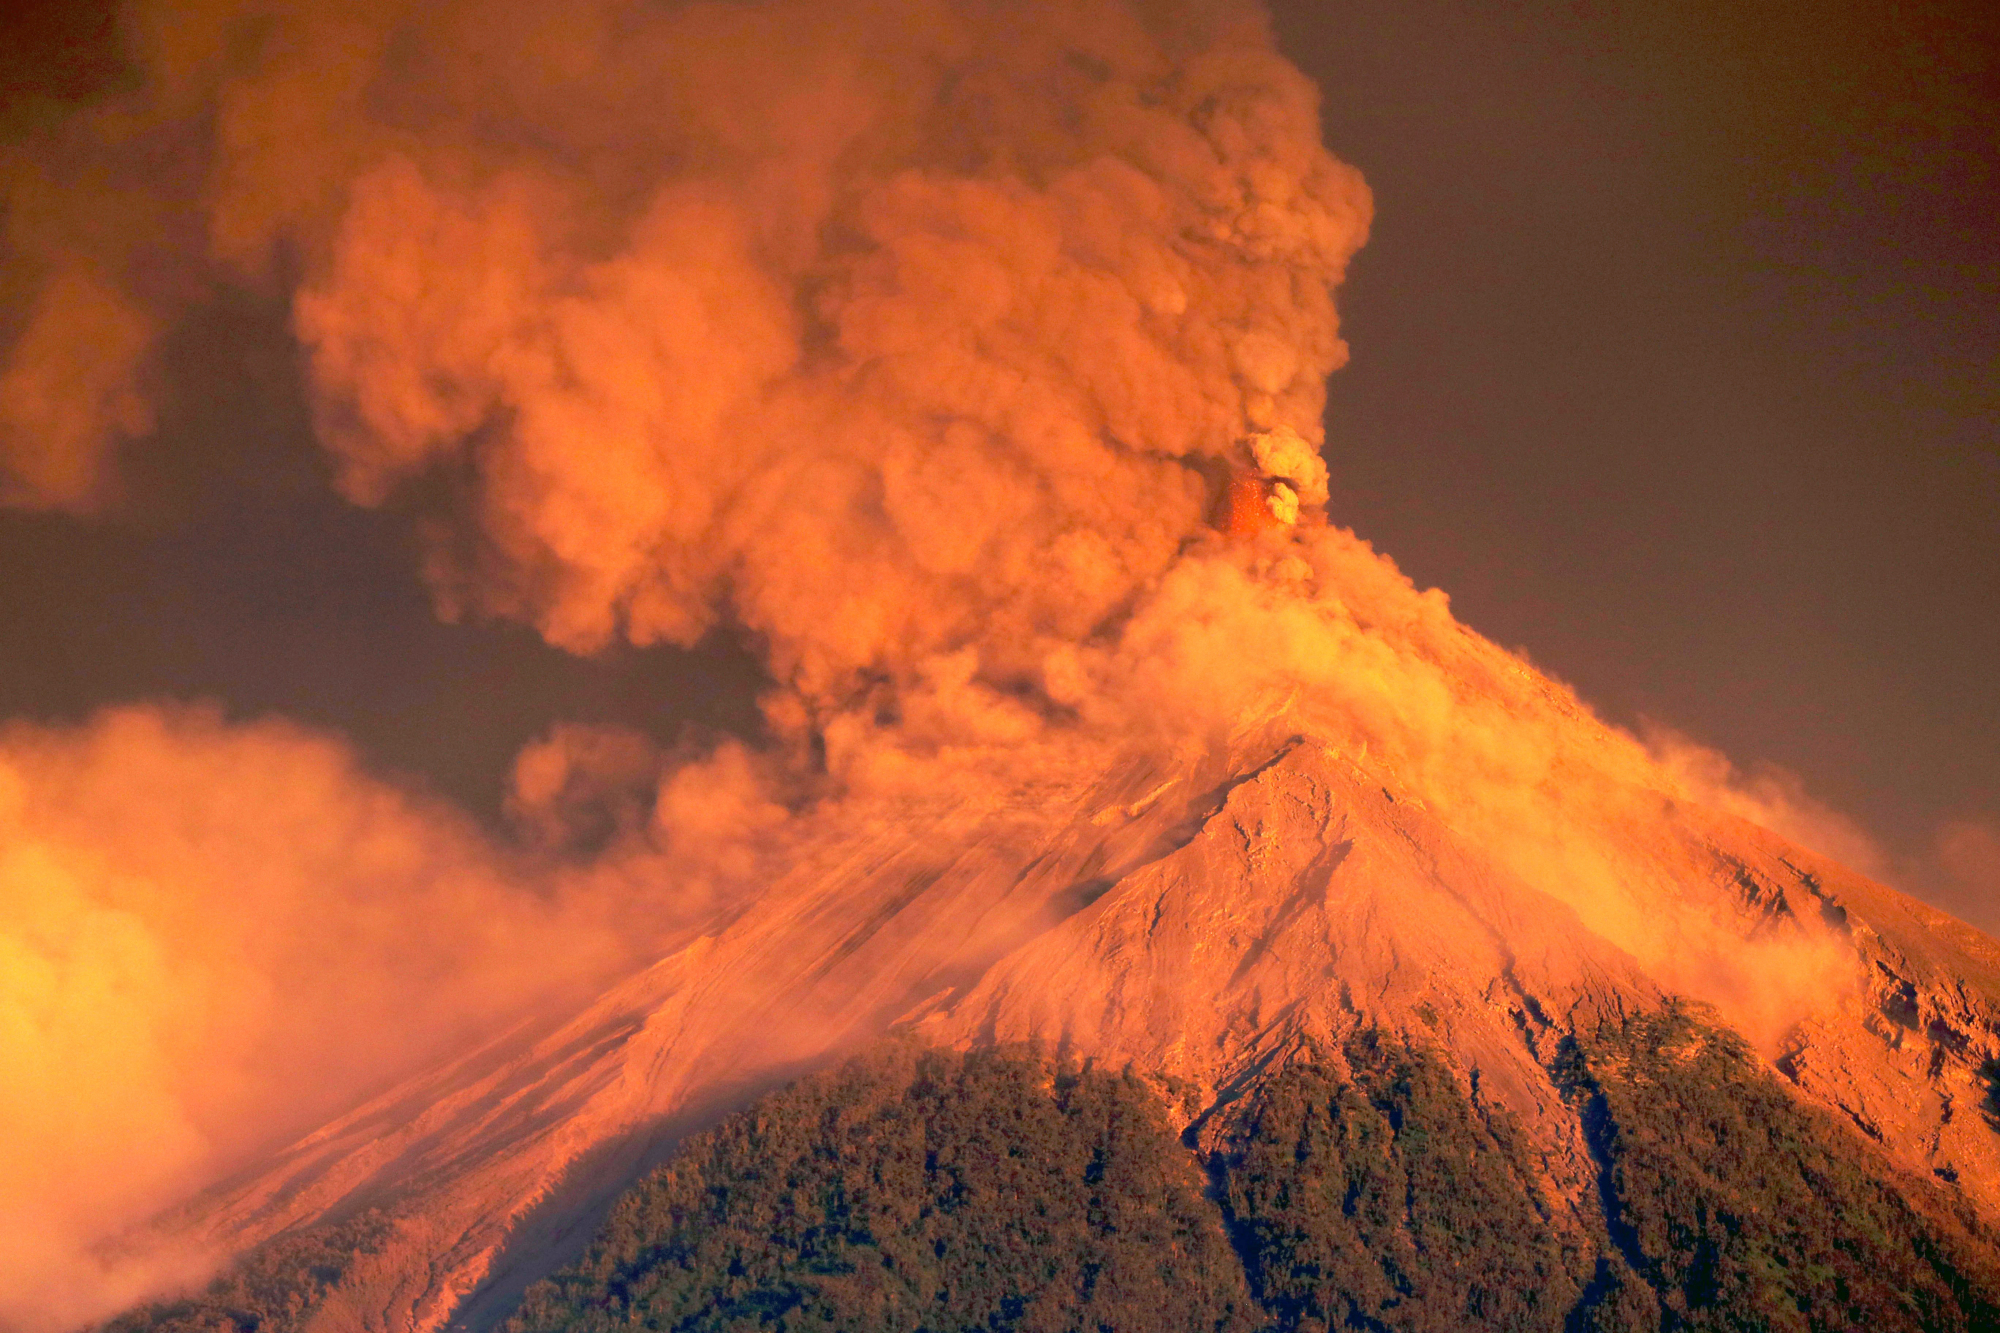 地球最大的超级火山,黄石公园火山,一旦喷发会造成怎样的灾难?